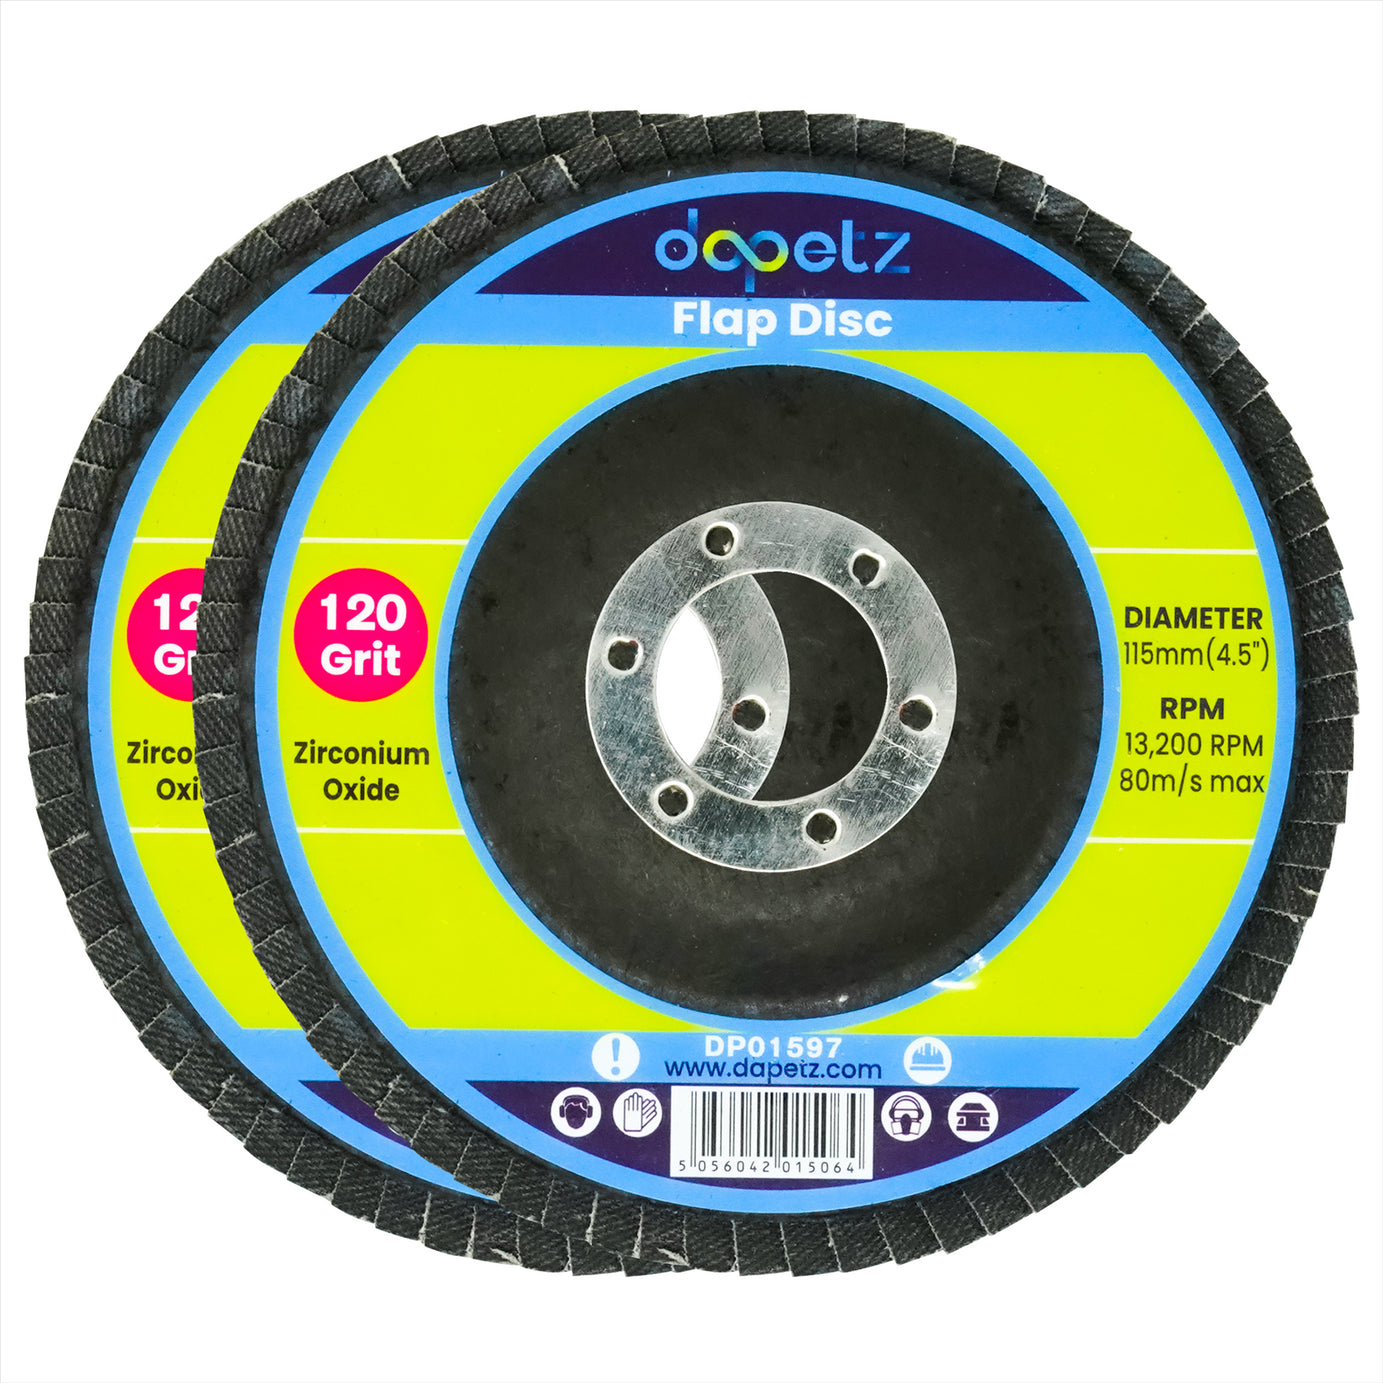 2 x Flap Grinding Sanding Discs 115mm 4.5" 120 Grit Angle Wheel Zircon